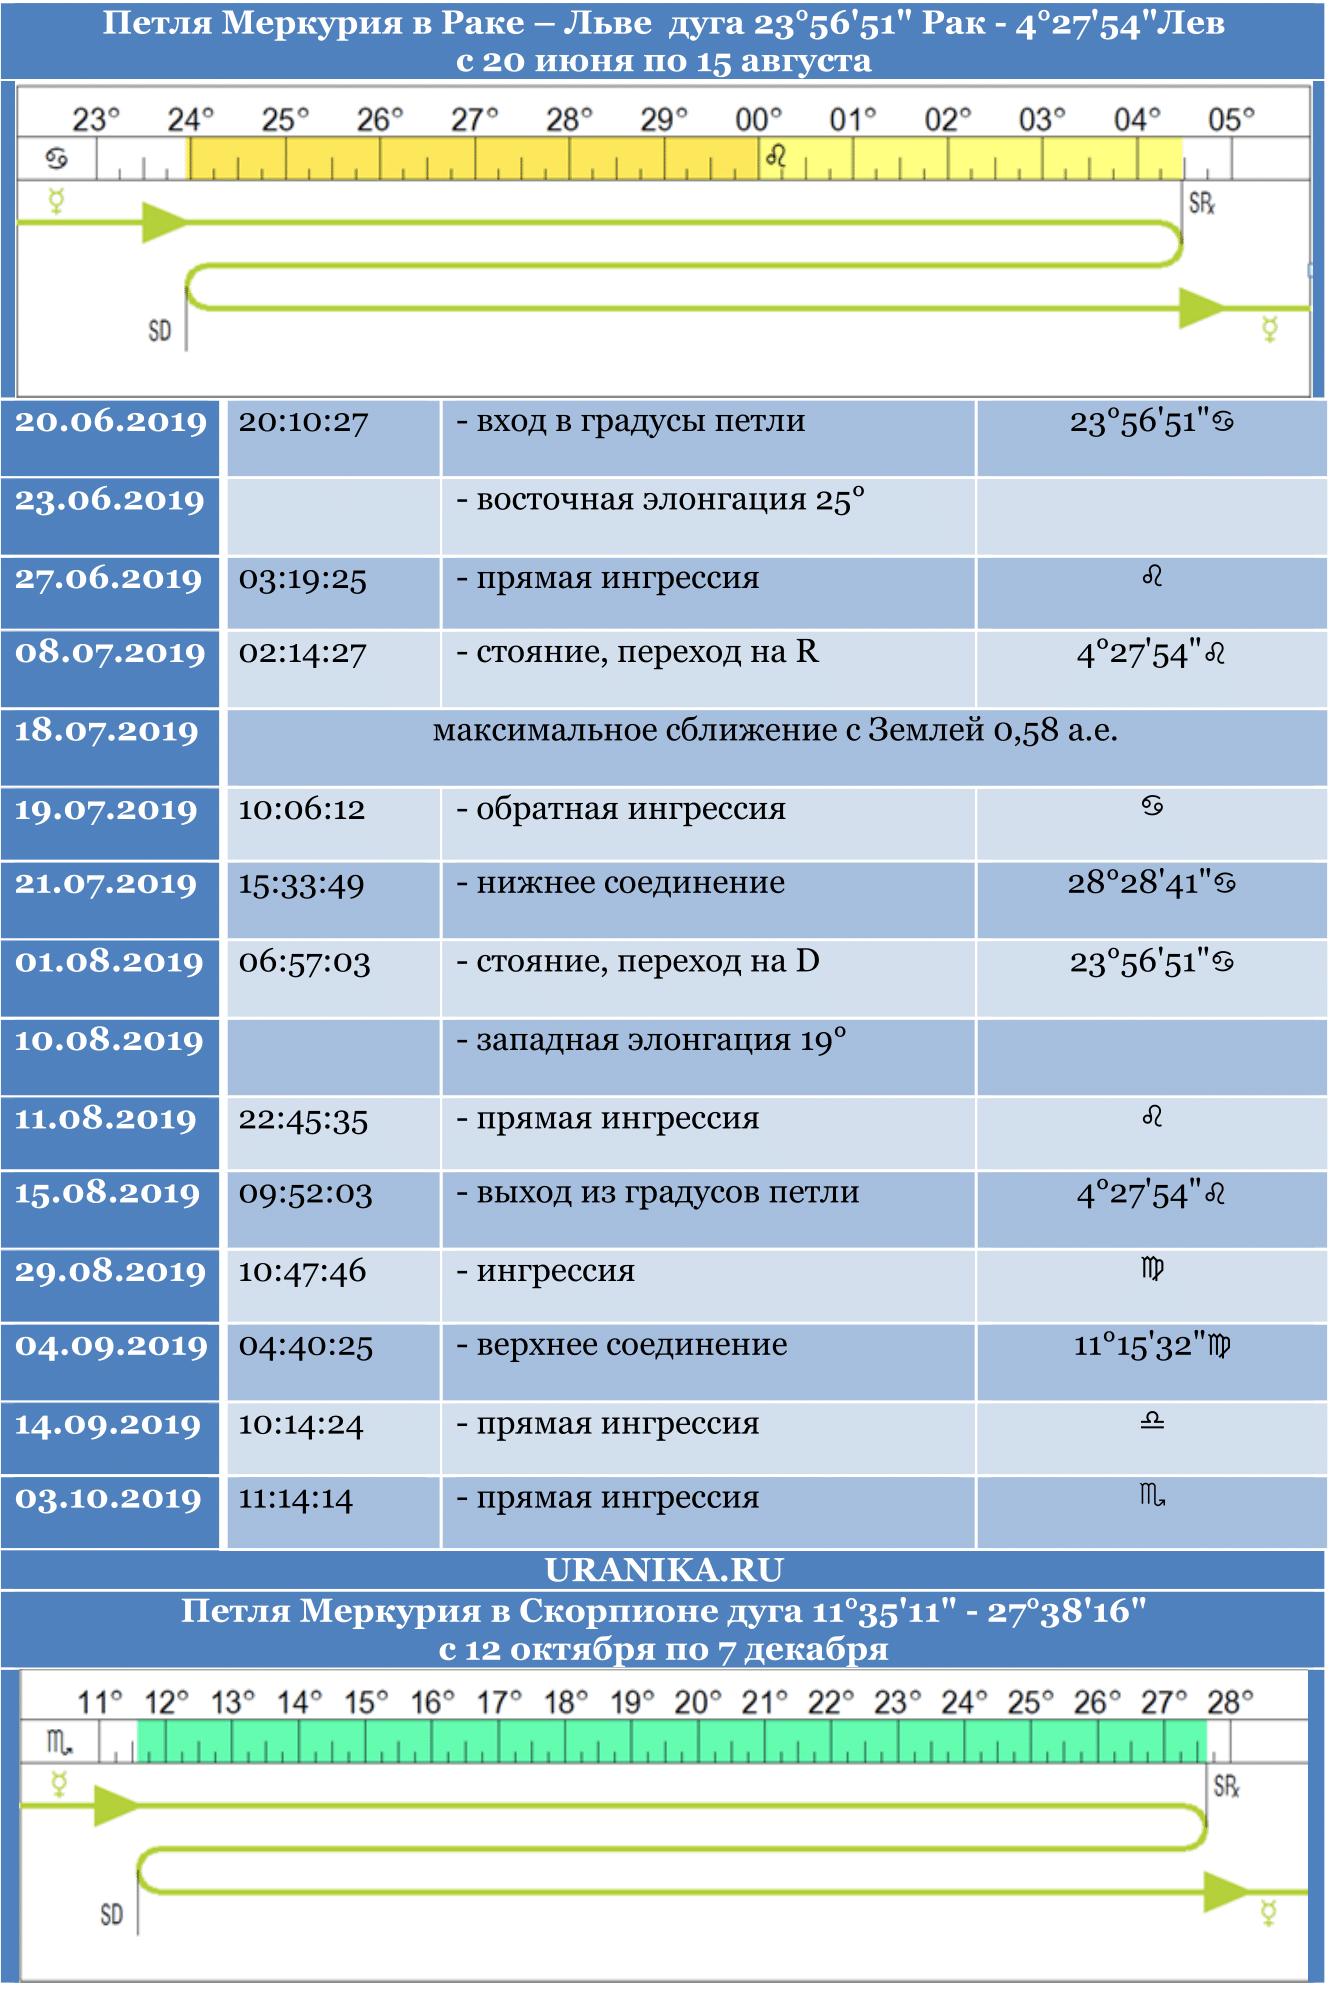 petli merkurija s kopirajtom v shrifte dzhorzhija so znakami 2 e1549888501625 - Петли Меркурия в 2019 году. Ингрессии и соединения